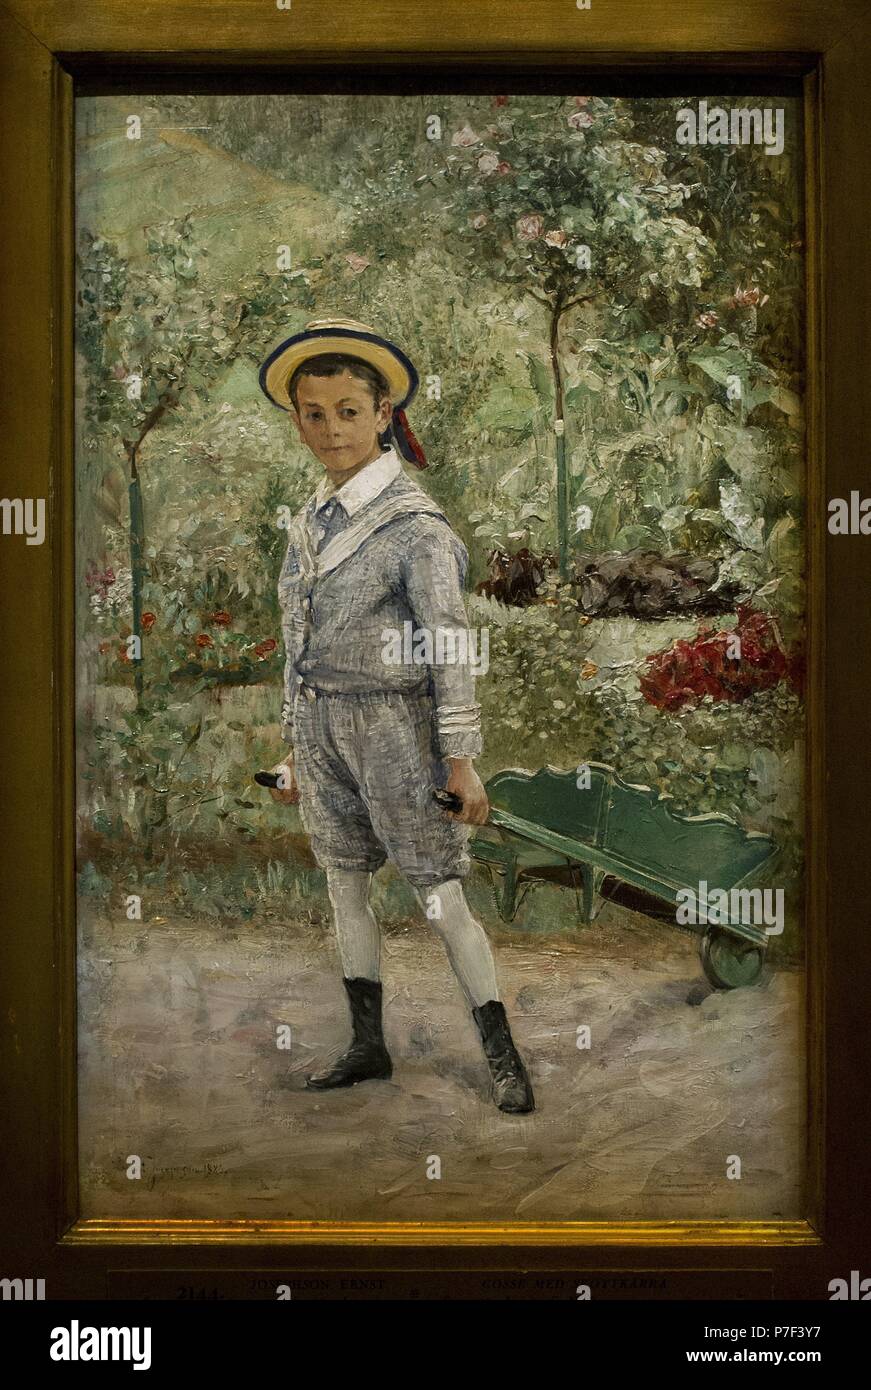 Ernst Josephson (1851-1906). Schwedischer Maler. Junge mit einer Schubkarre, 1880. National Museum. Stockholm. Schweden. Stockfoto